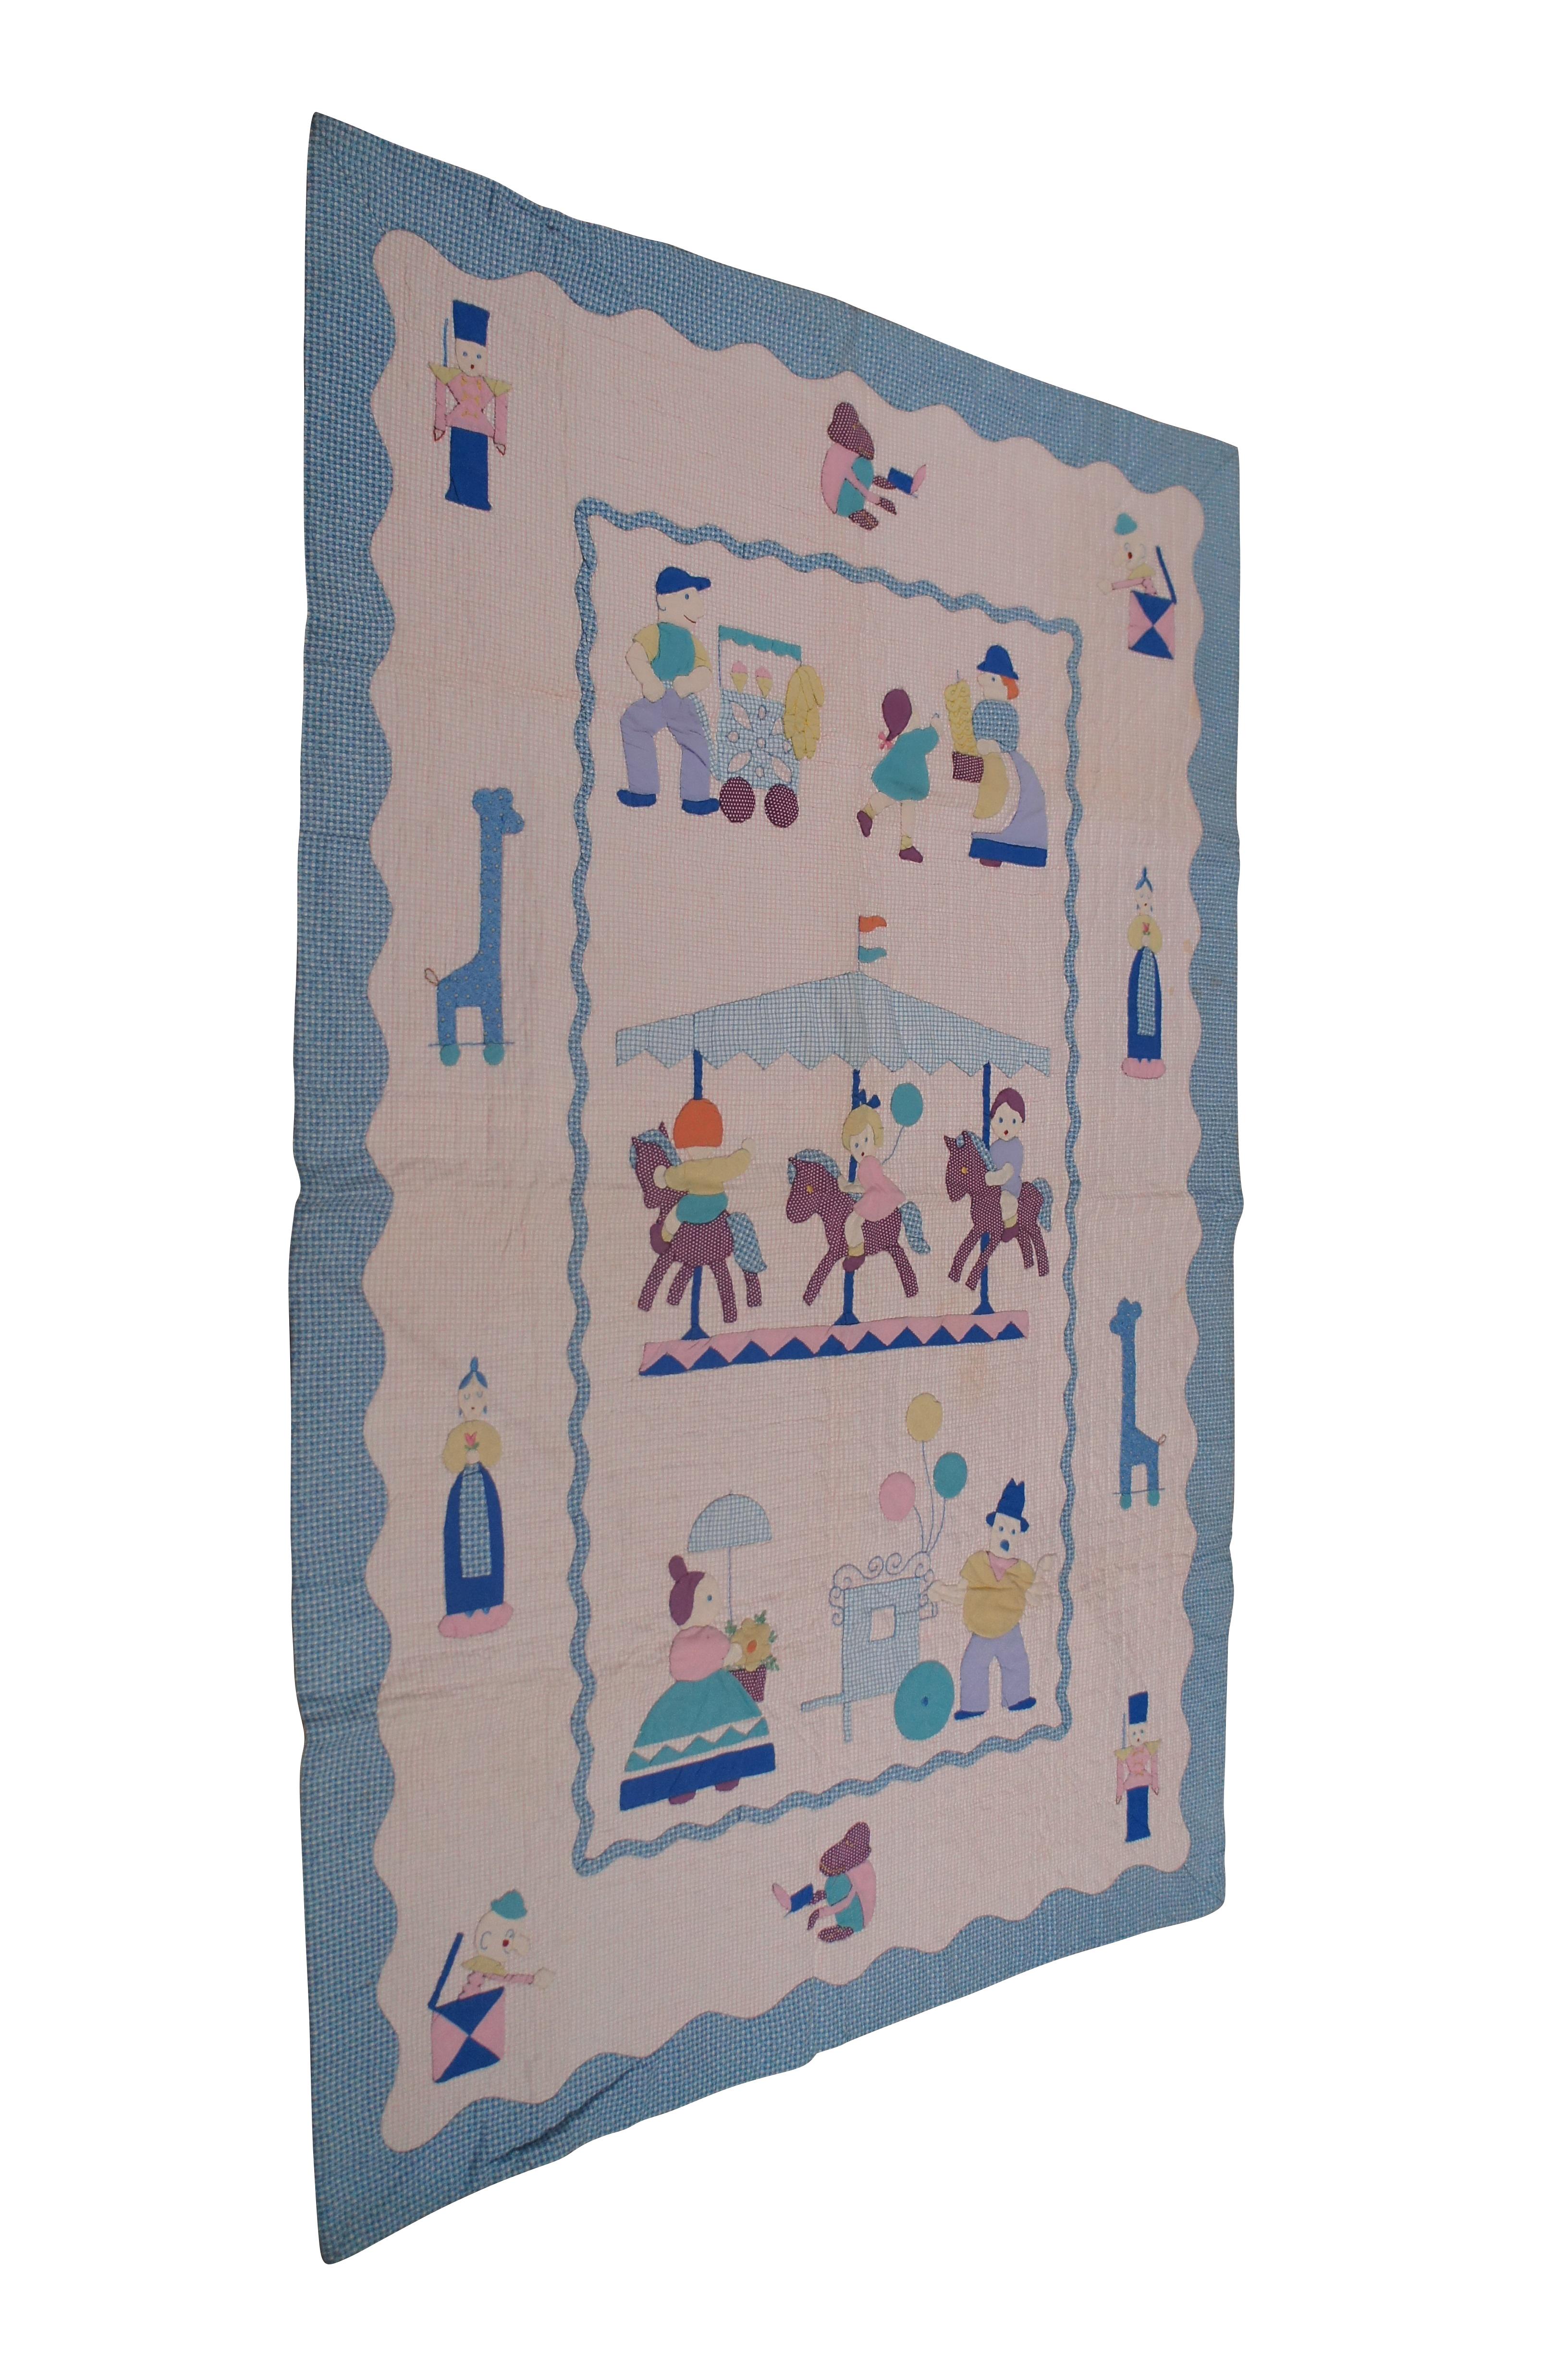 Lit d'enfant Merry Go Round en applique, un kit de quilt Paragon, vers les années 1960.  

Dimensions :
36